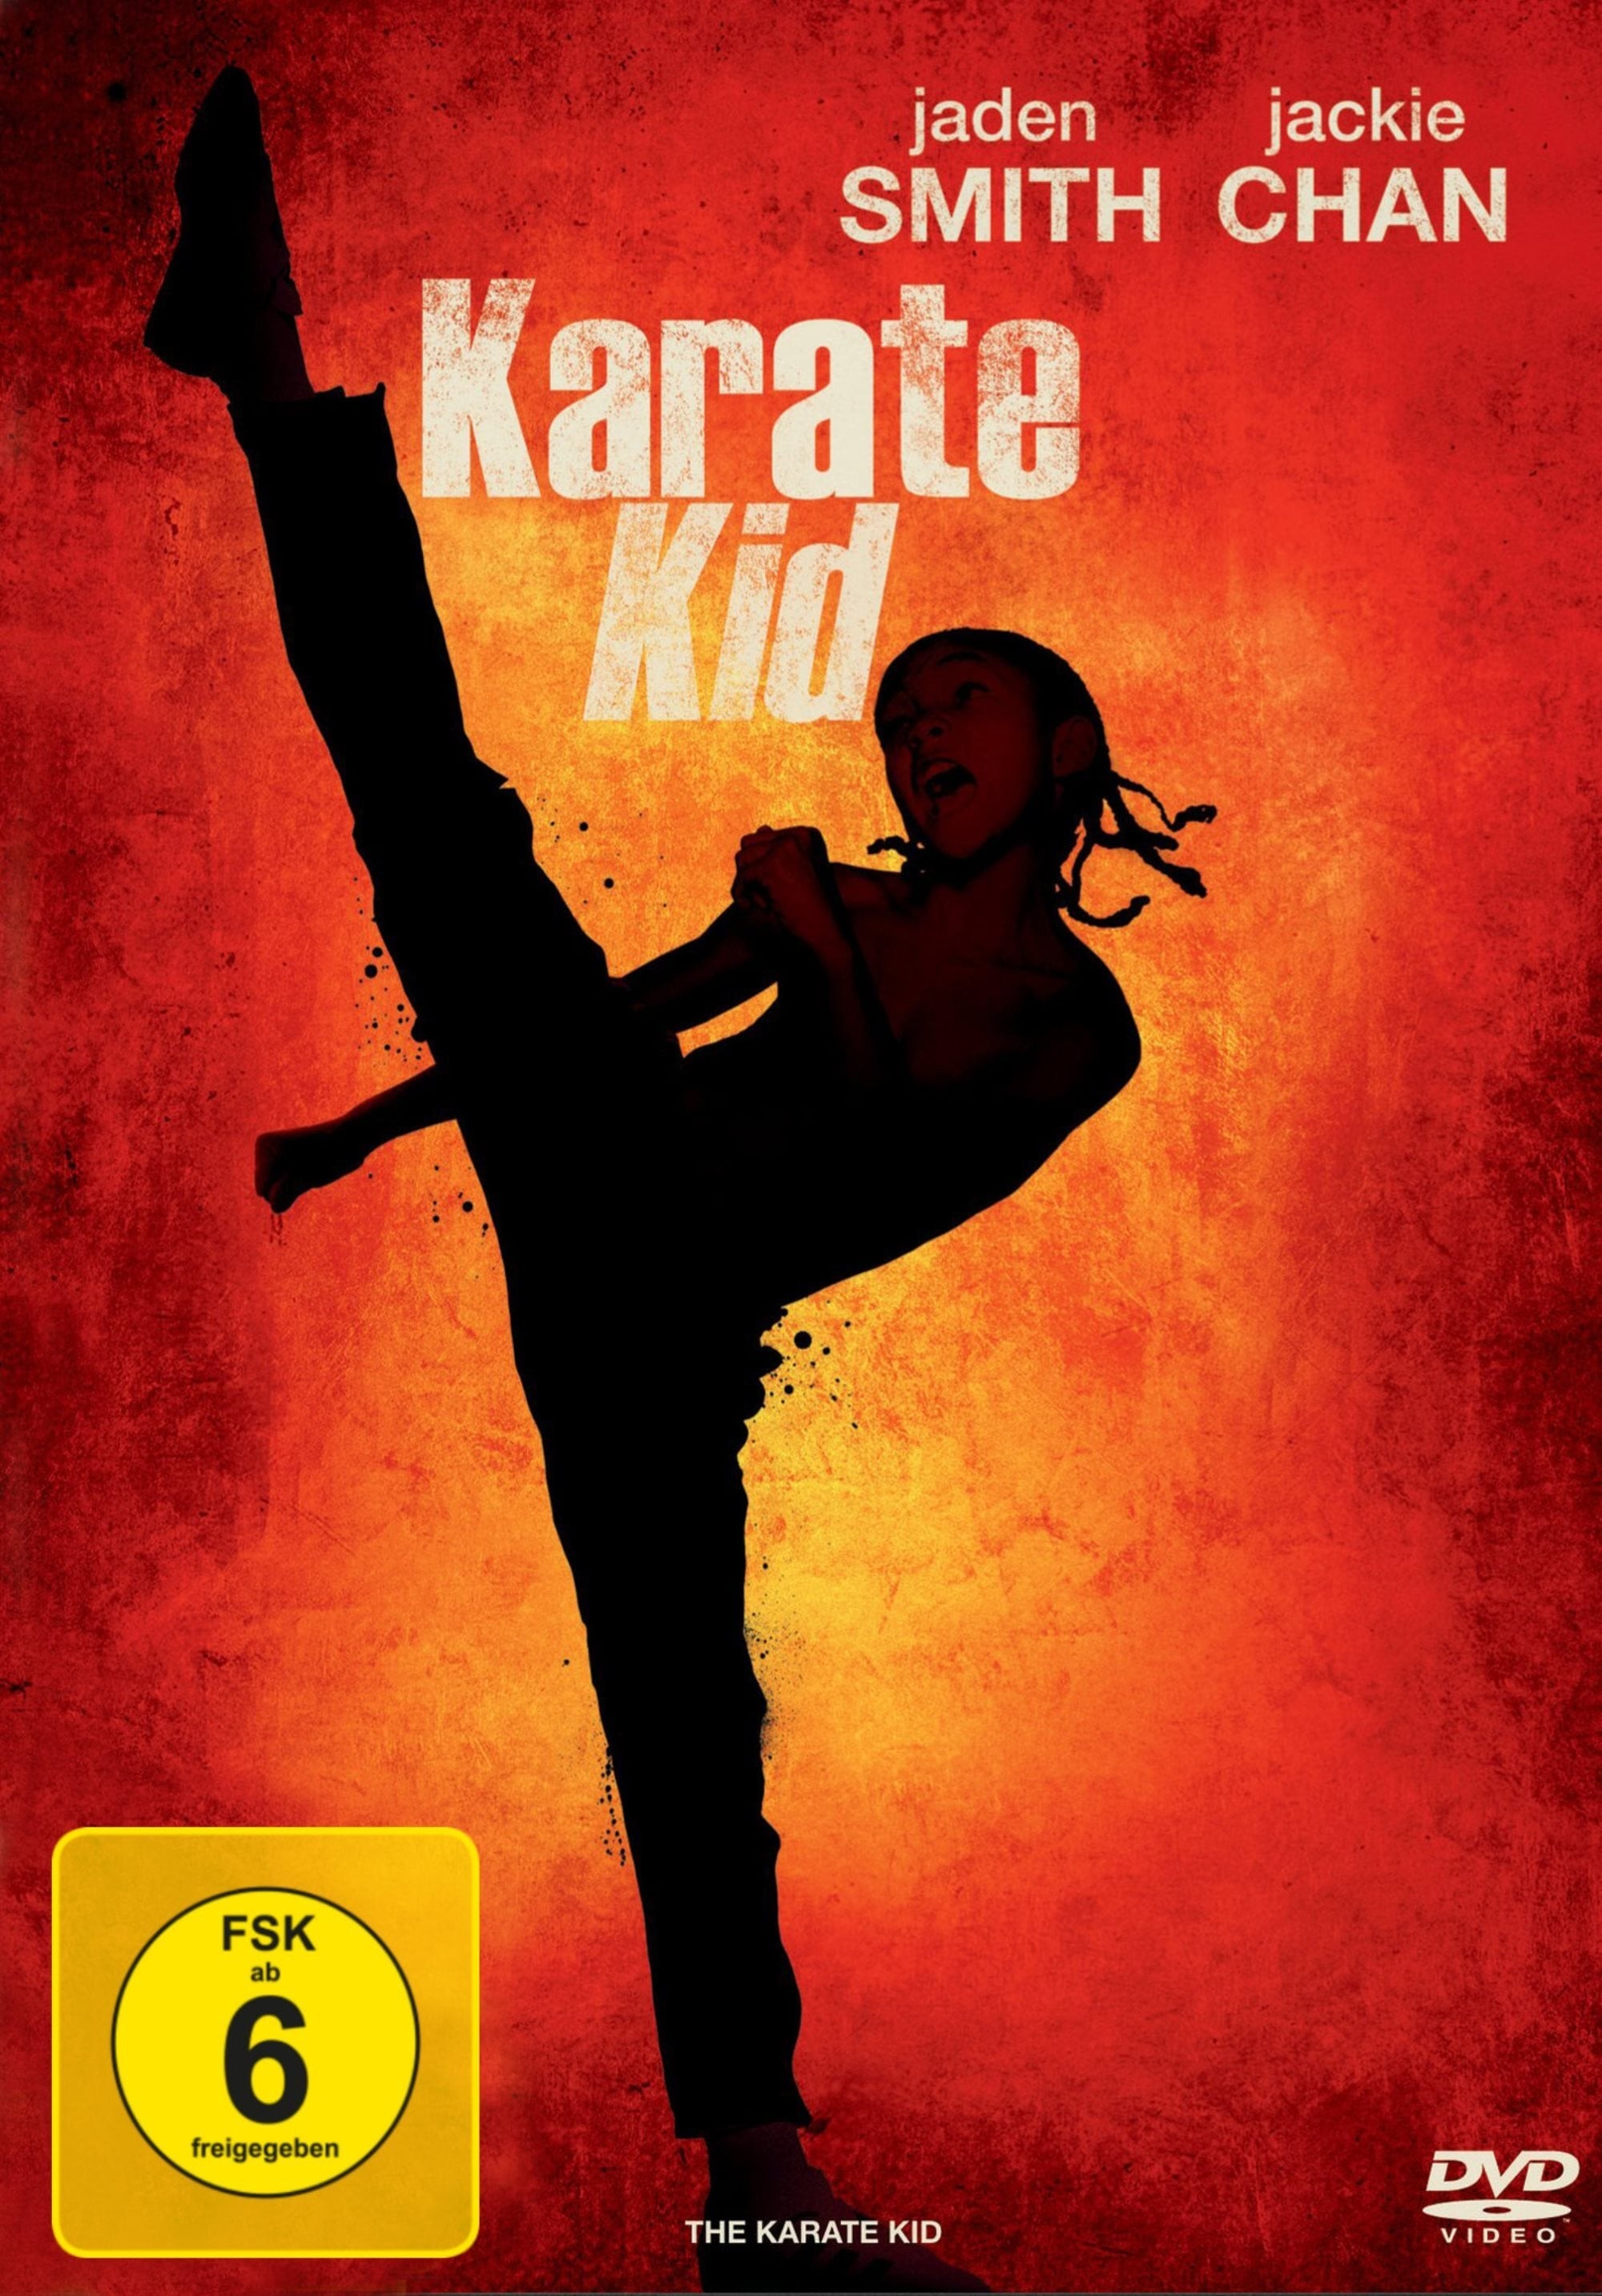 the karate kid 2010 free online streaming